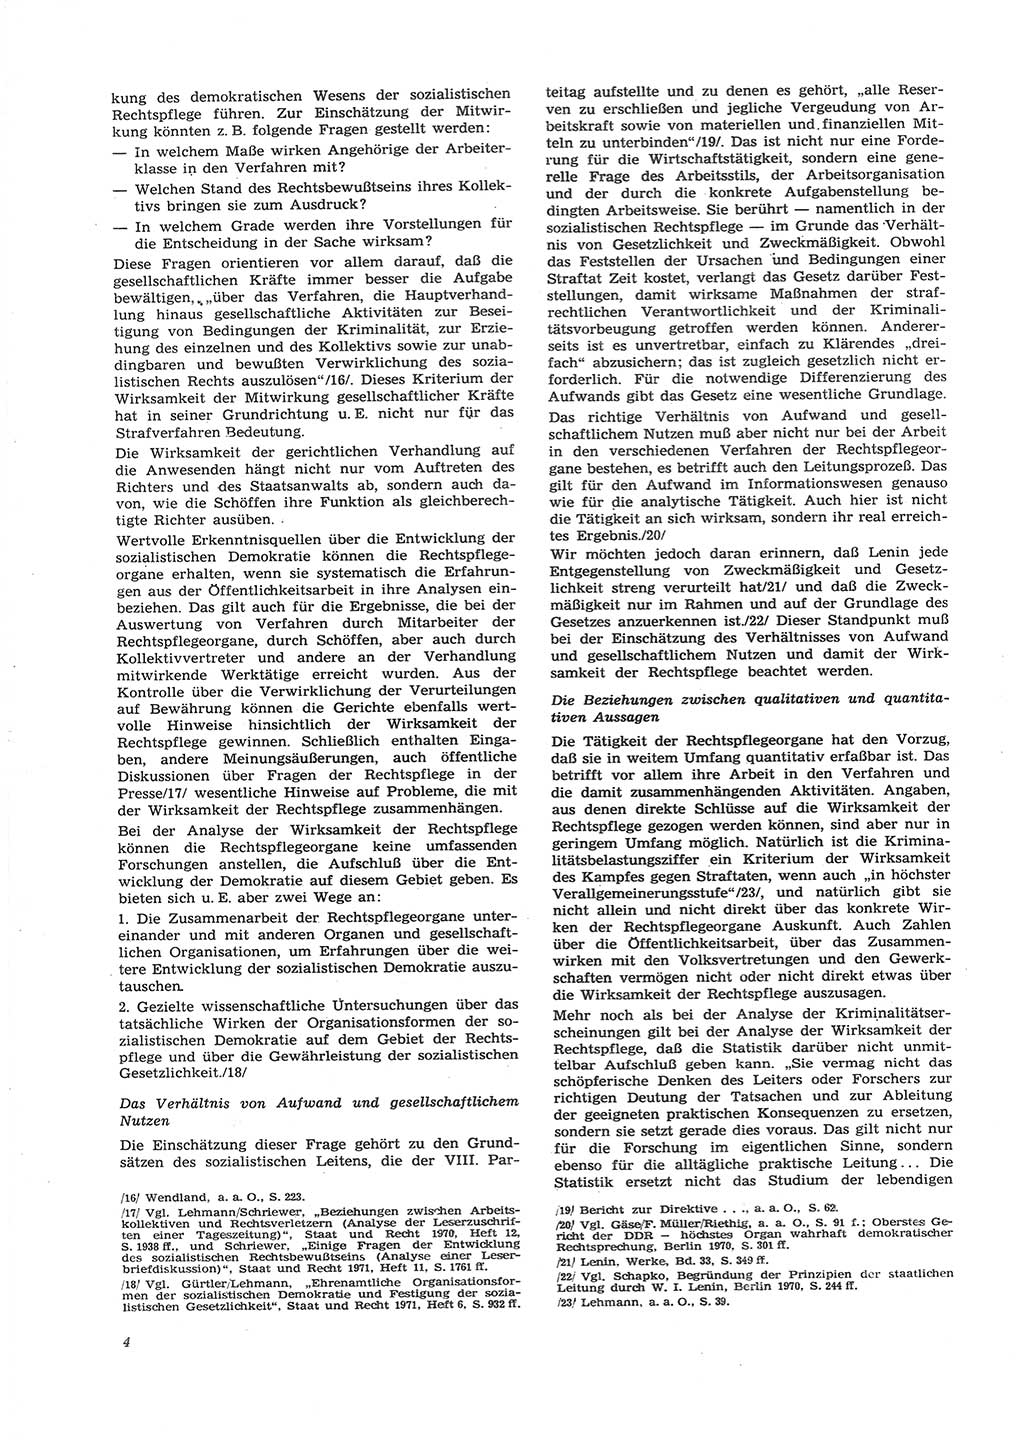 Neue Justiz (NJ), Zeitschrift für Recht und Rechtswissenschaft [Deutsche Demokratische Republik (DDR)], 26. Jahrgang 1972, Seite 4 (NJ DDR 1972, S. 4)